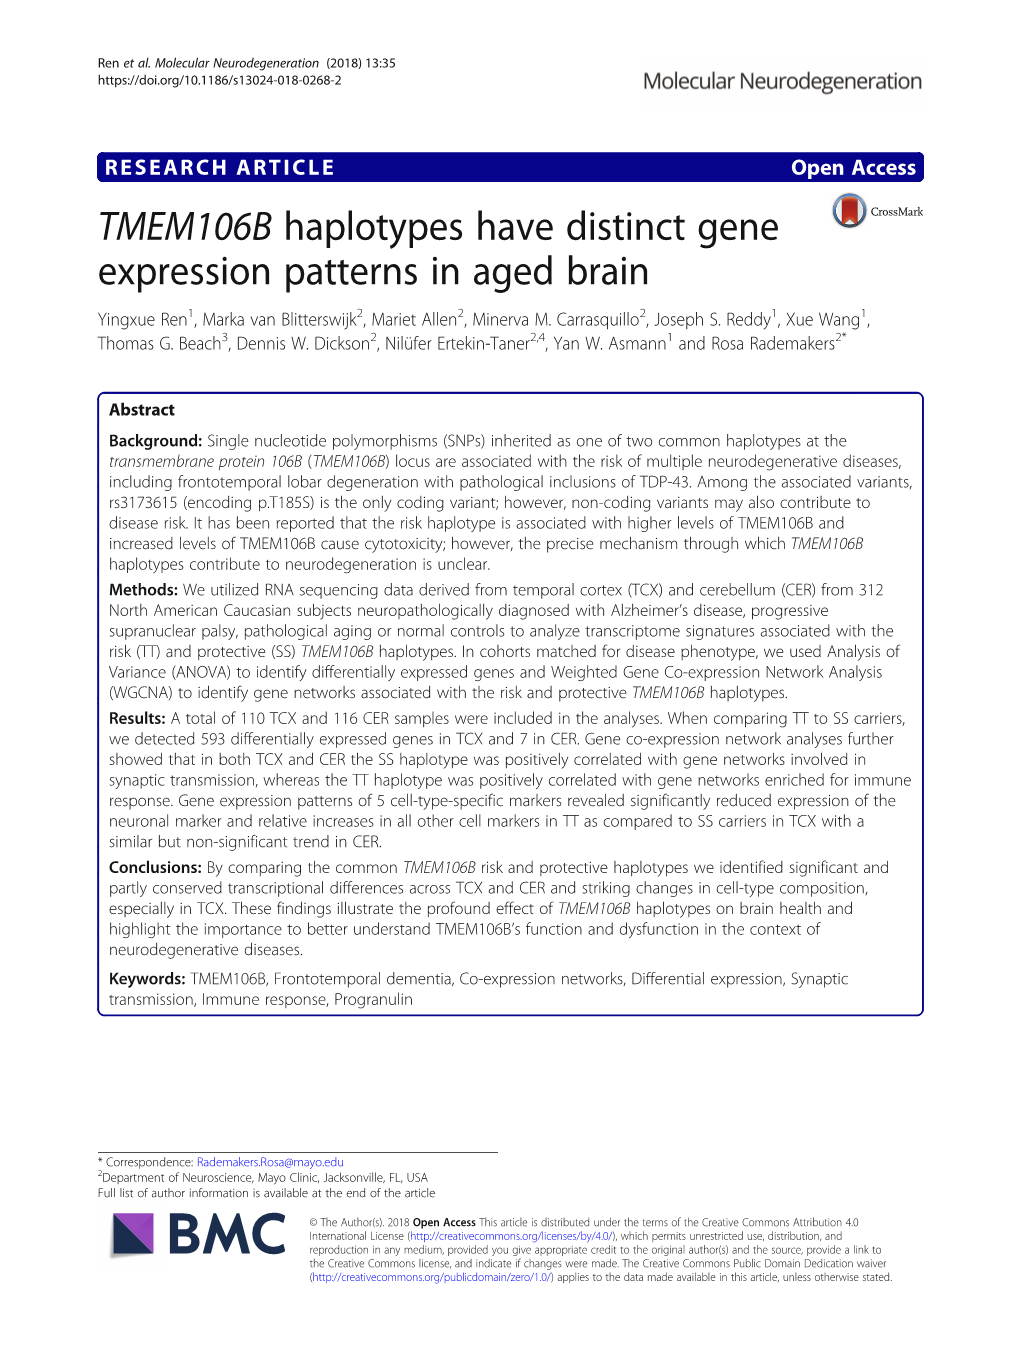 TMEM106B Haplotypes Have Distinct Gene Expression Patterns in Aged Brain Yingxue Ren1, Marka Van Blitterswijk2, Mariet Allen2, Minerva M